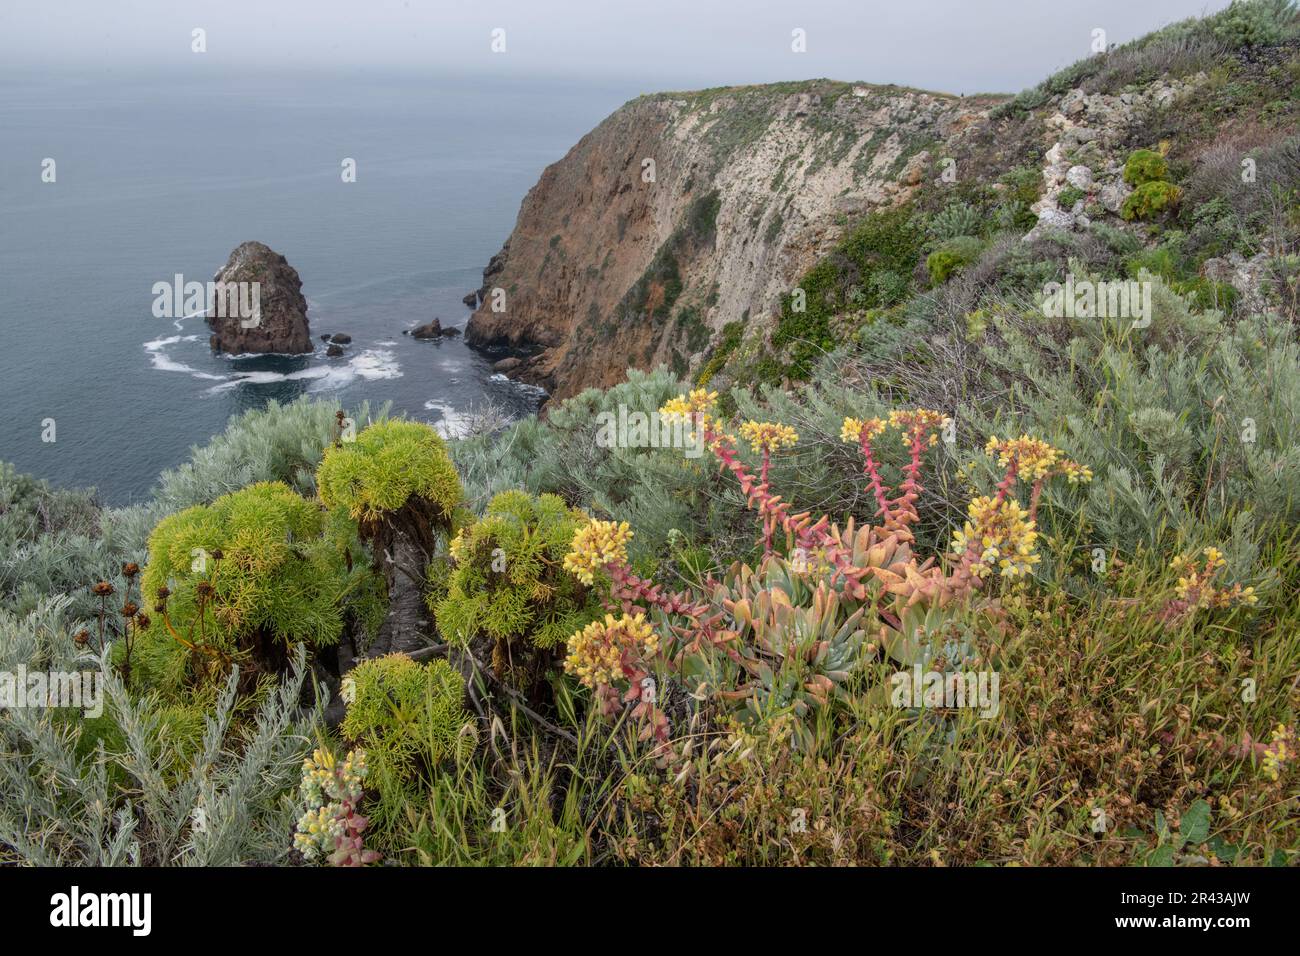 La comunità di piante native costiere delle isole del canale, Dudleya greenei, Coreopsis gigantea, sagesbrush, crescono lungo le scogliere sopra l'oceano. Foto Stock